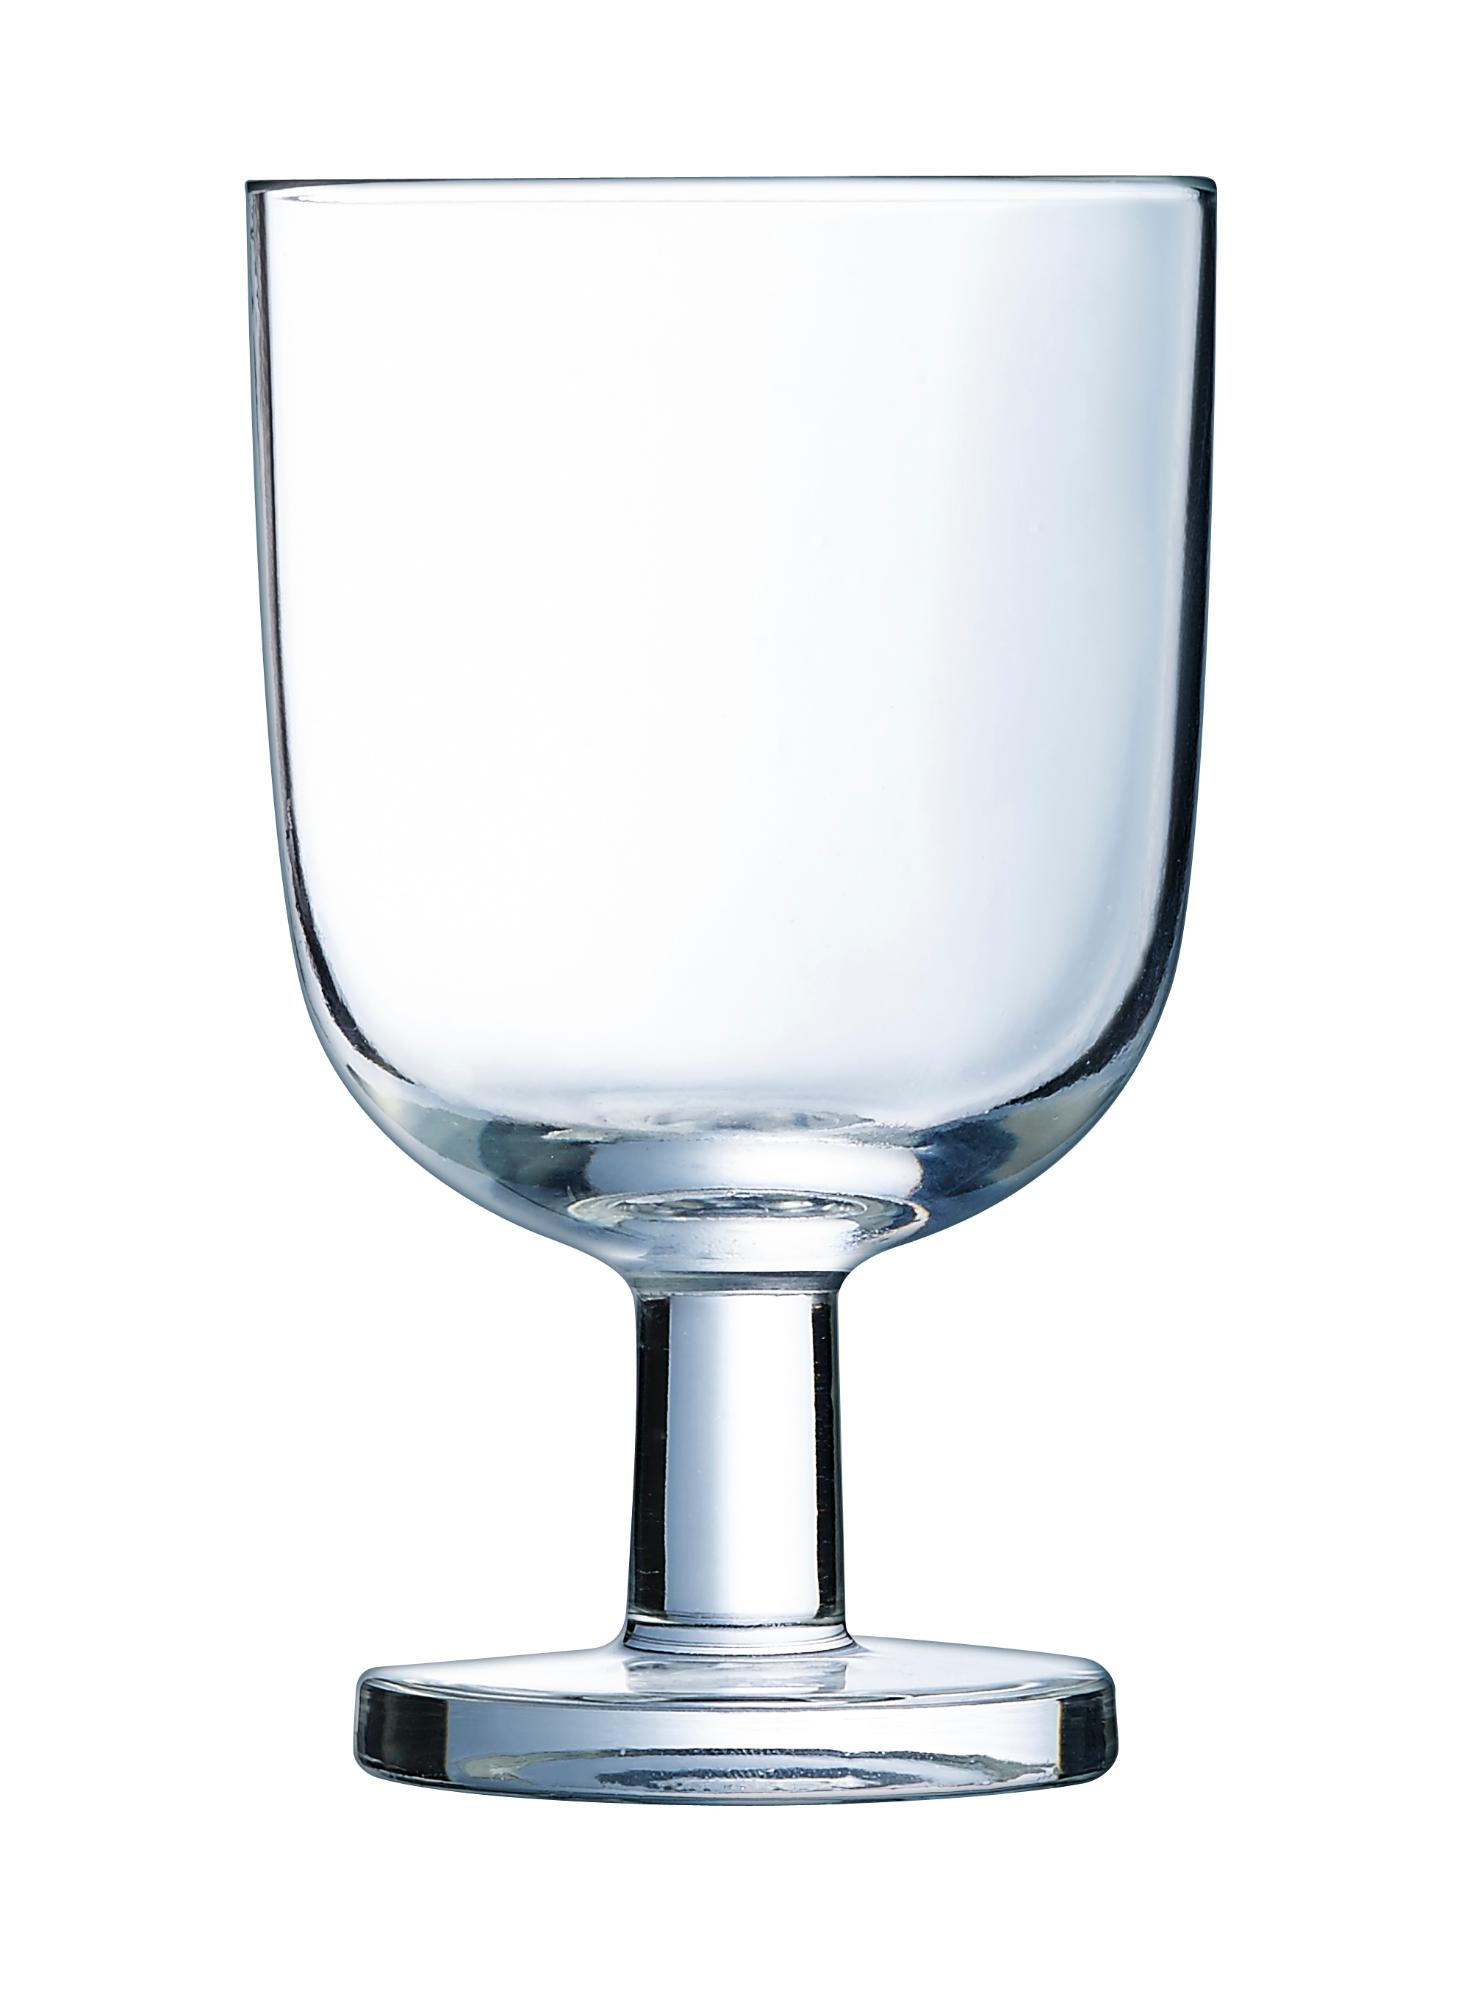 Resto glass, 250ml